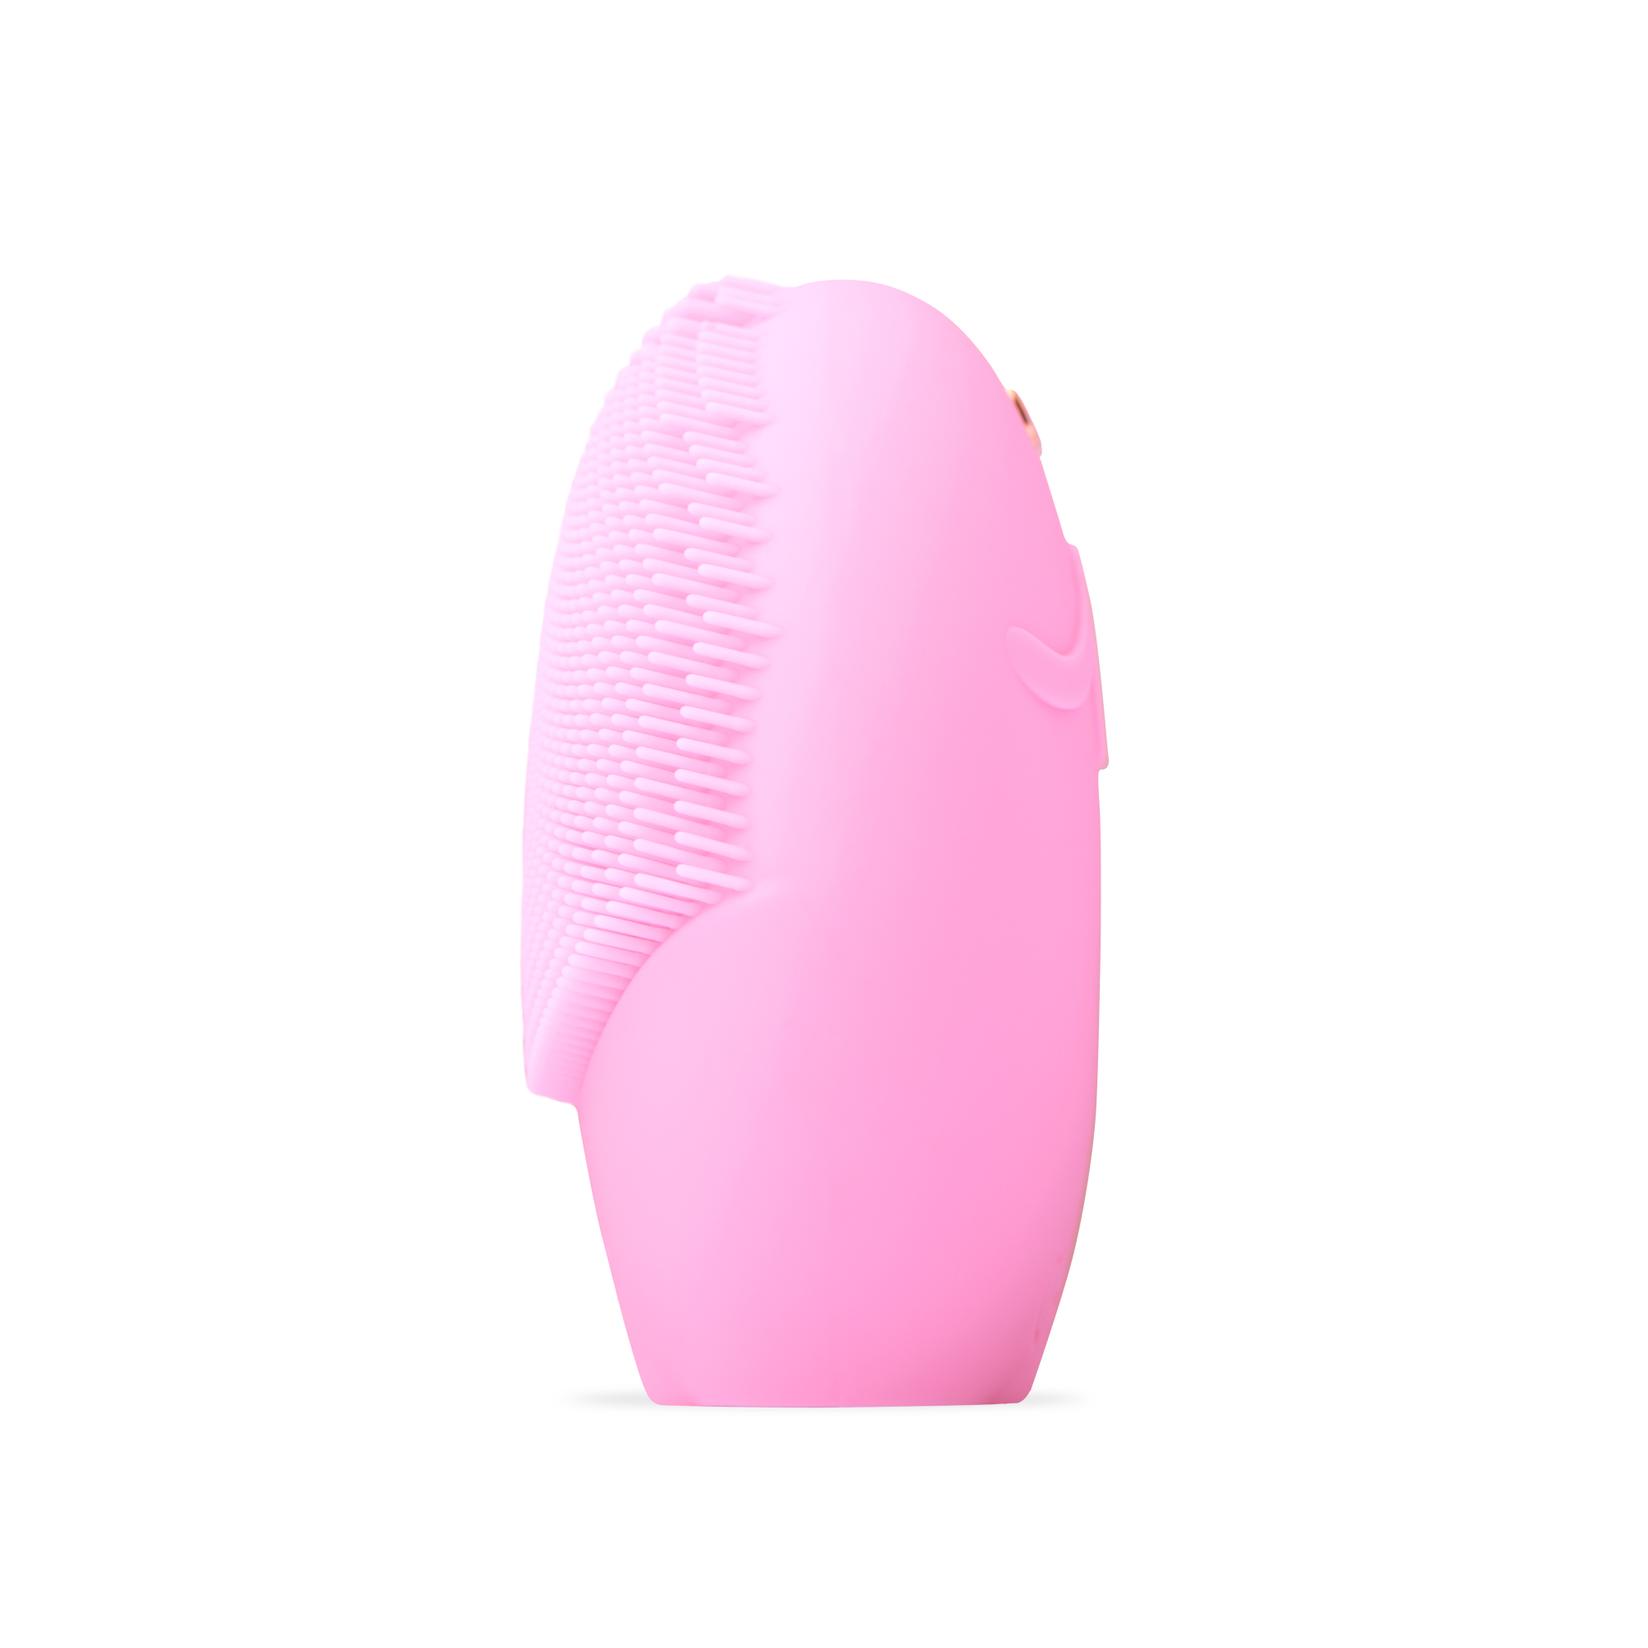 Selected image for FOREO Pametni uređaj za čišćenje lica sa senzorima za analizu kože LUNA play smart 2 Tickle Me Pink